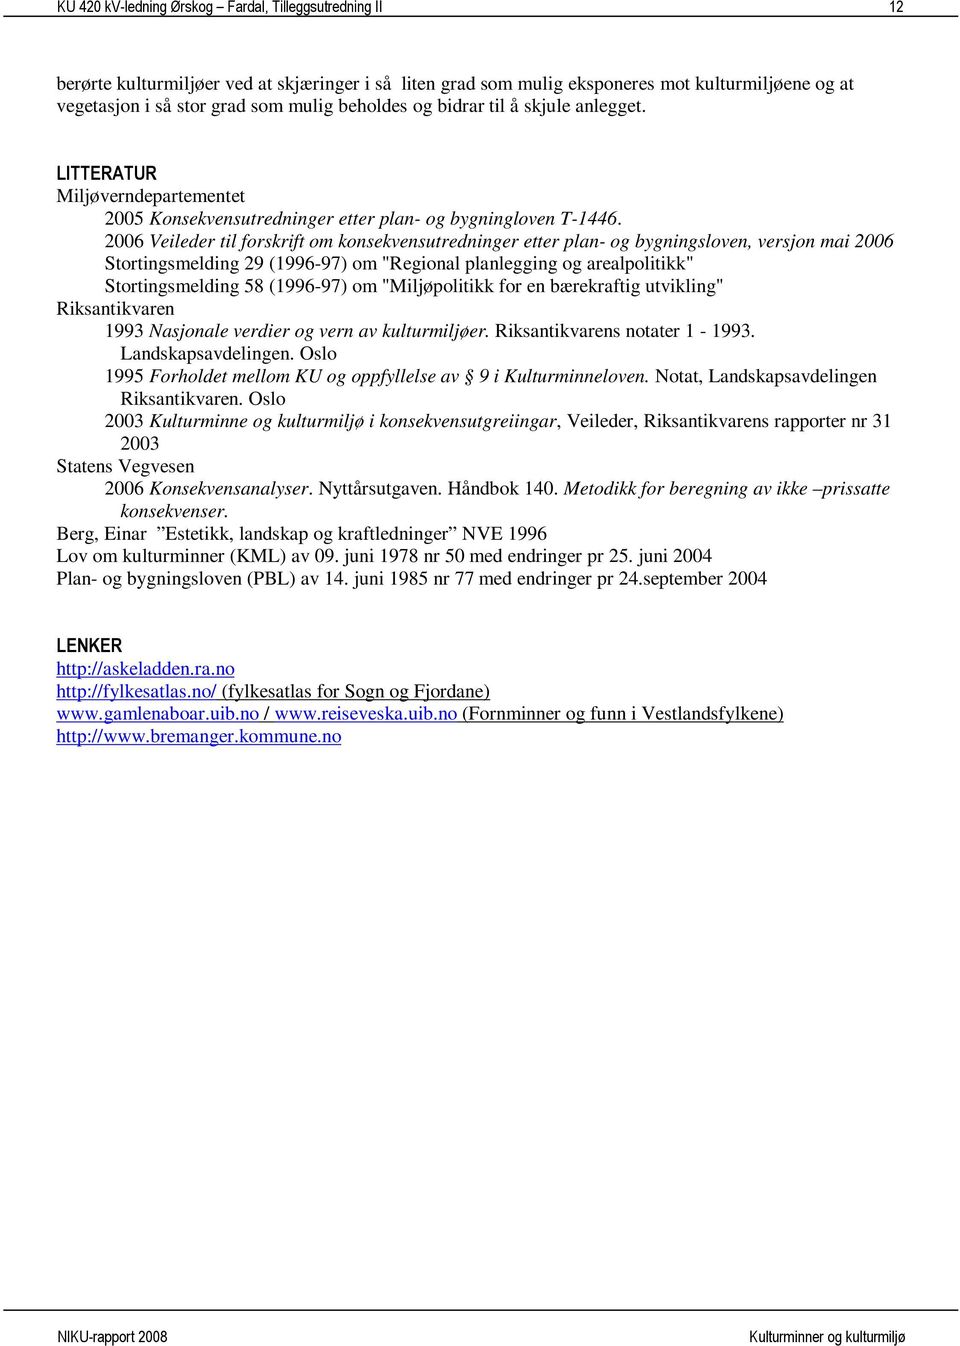 2006 Veileder til forskrift om konsekvensutredninger etter plan- og bygningsloven, versjon mai 2006 Stortingsmelding 29 (1996-97) om "Regional planlegging og arealpolitikk" Stortingsmelding 58